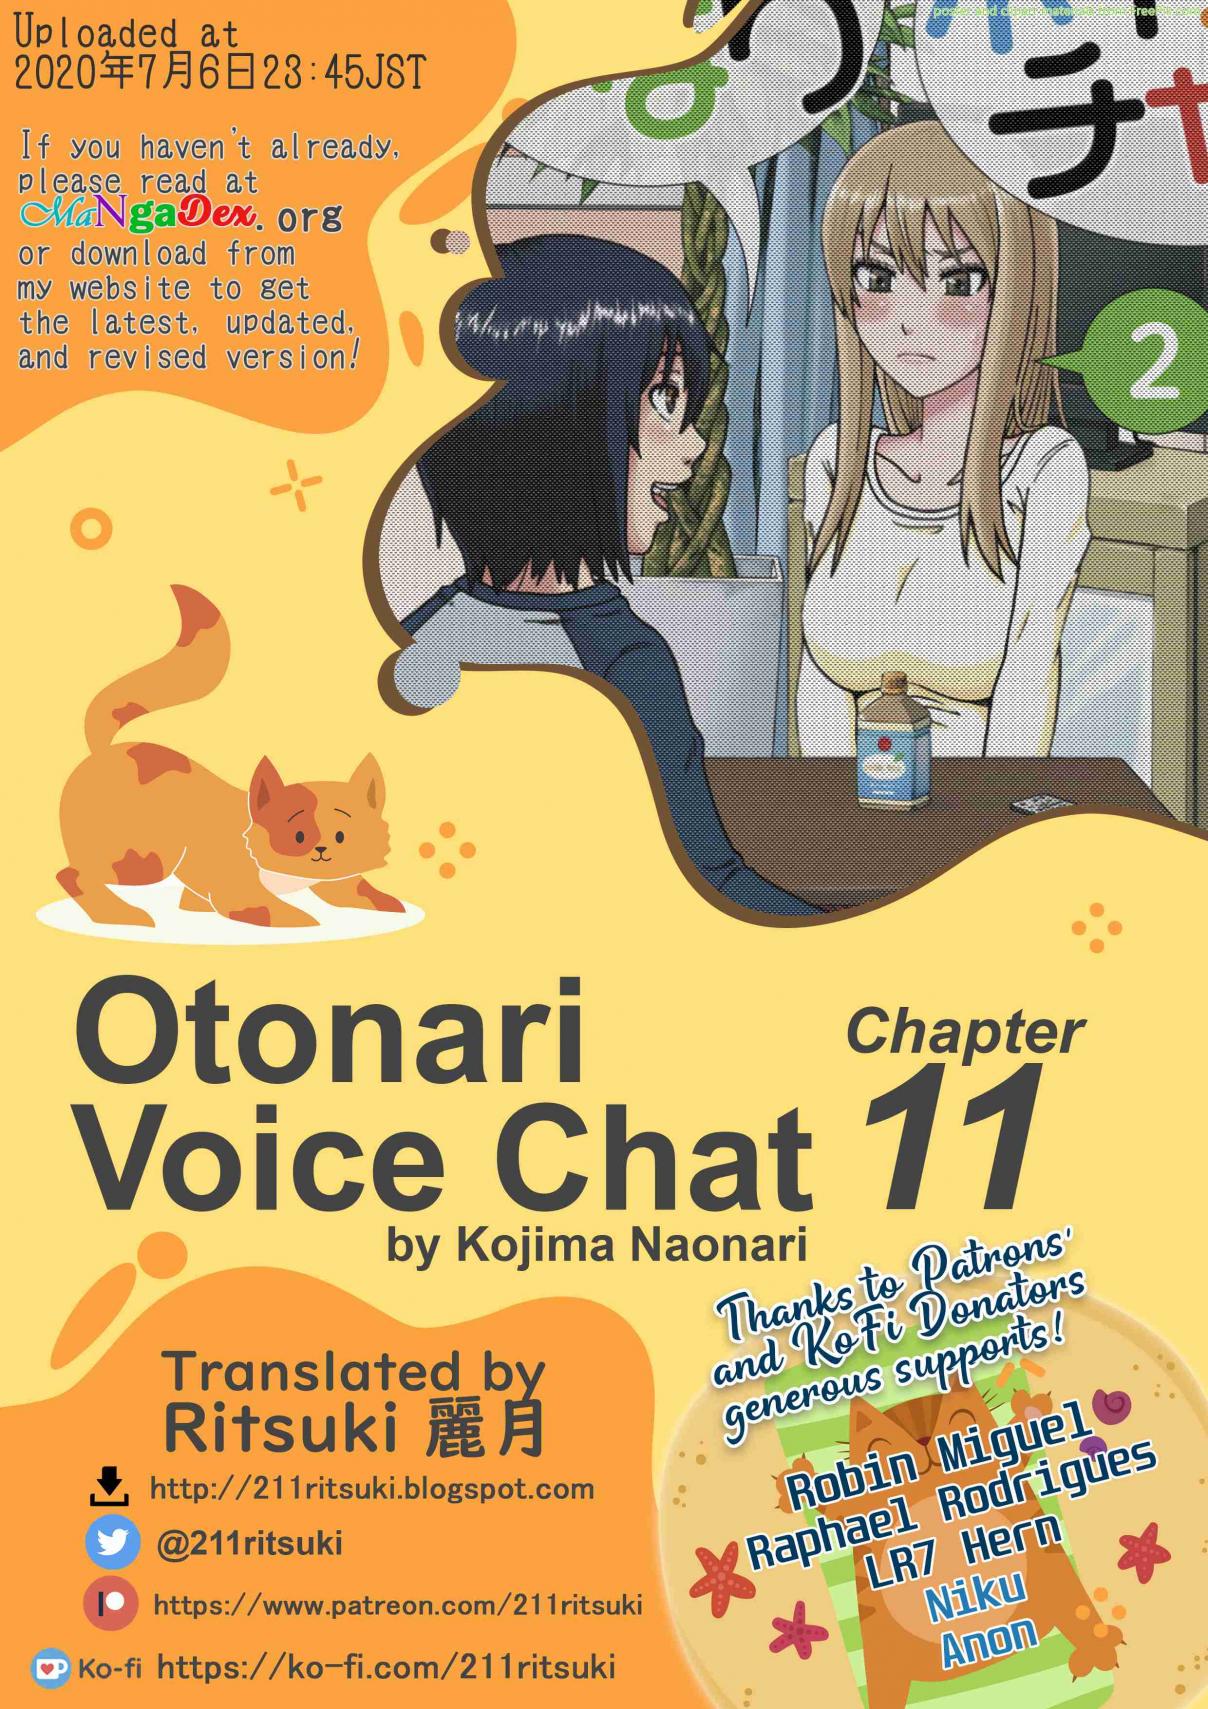 Otonari Voice Chat Vol. 2 Ch. 11